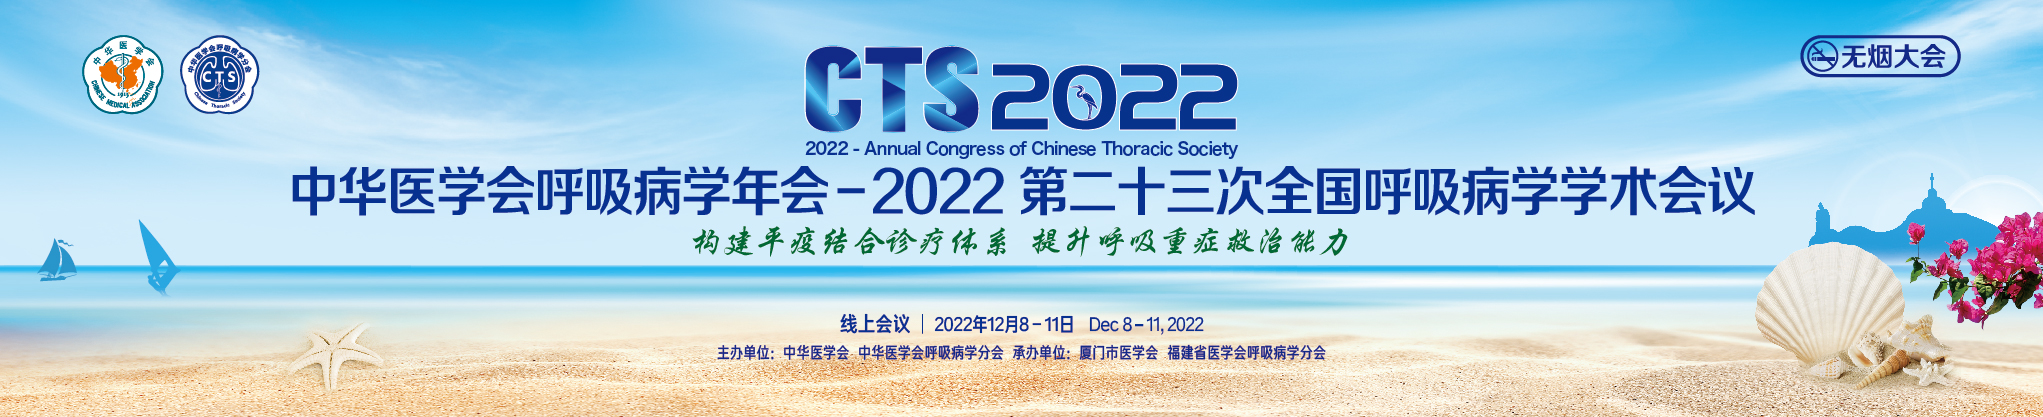 中华医学会呼吸病学年会-2022 (第二十三次全国呼吸病学学术会议)